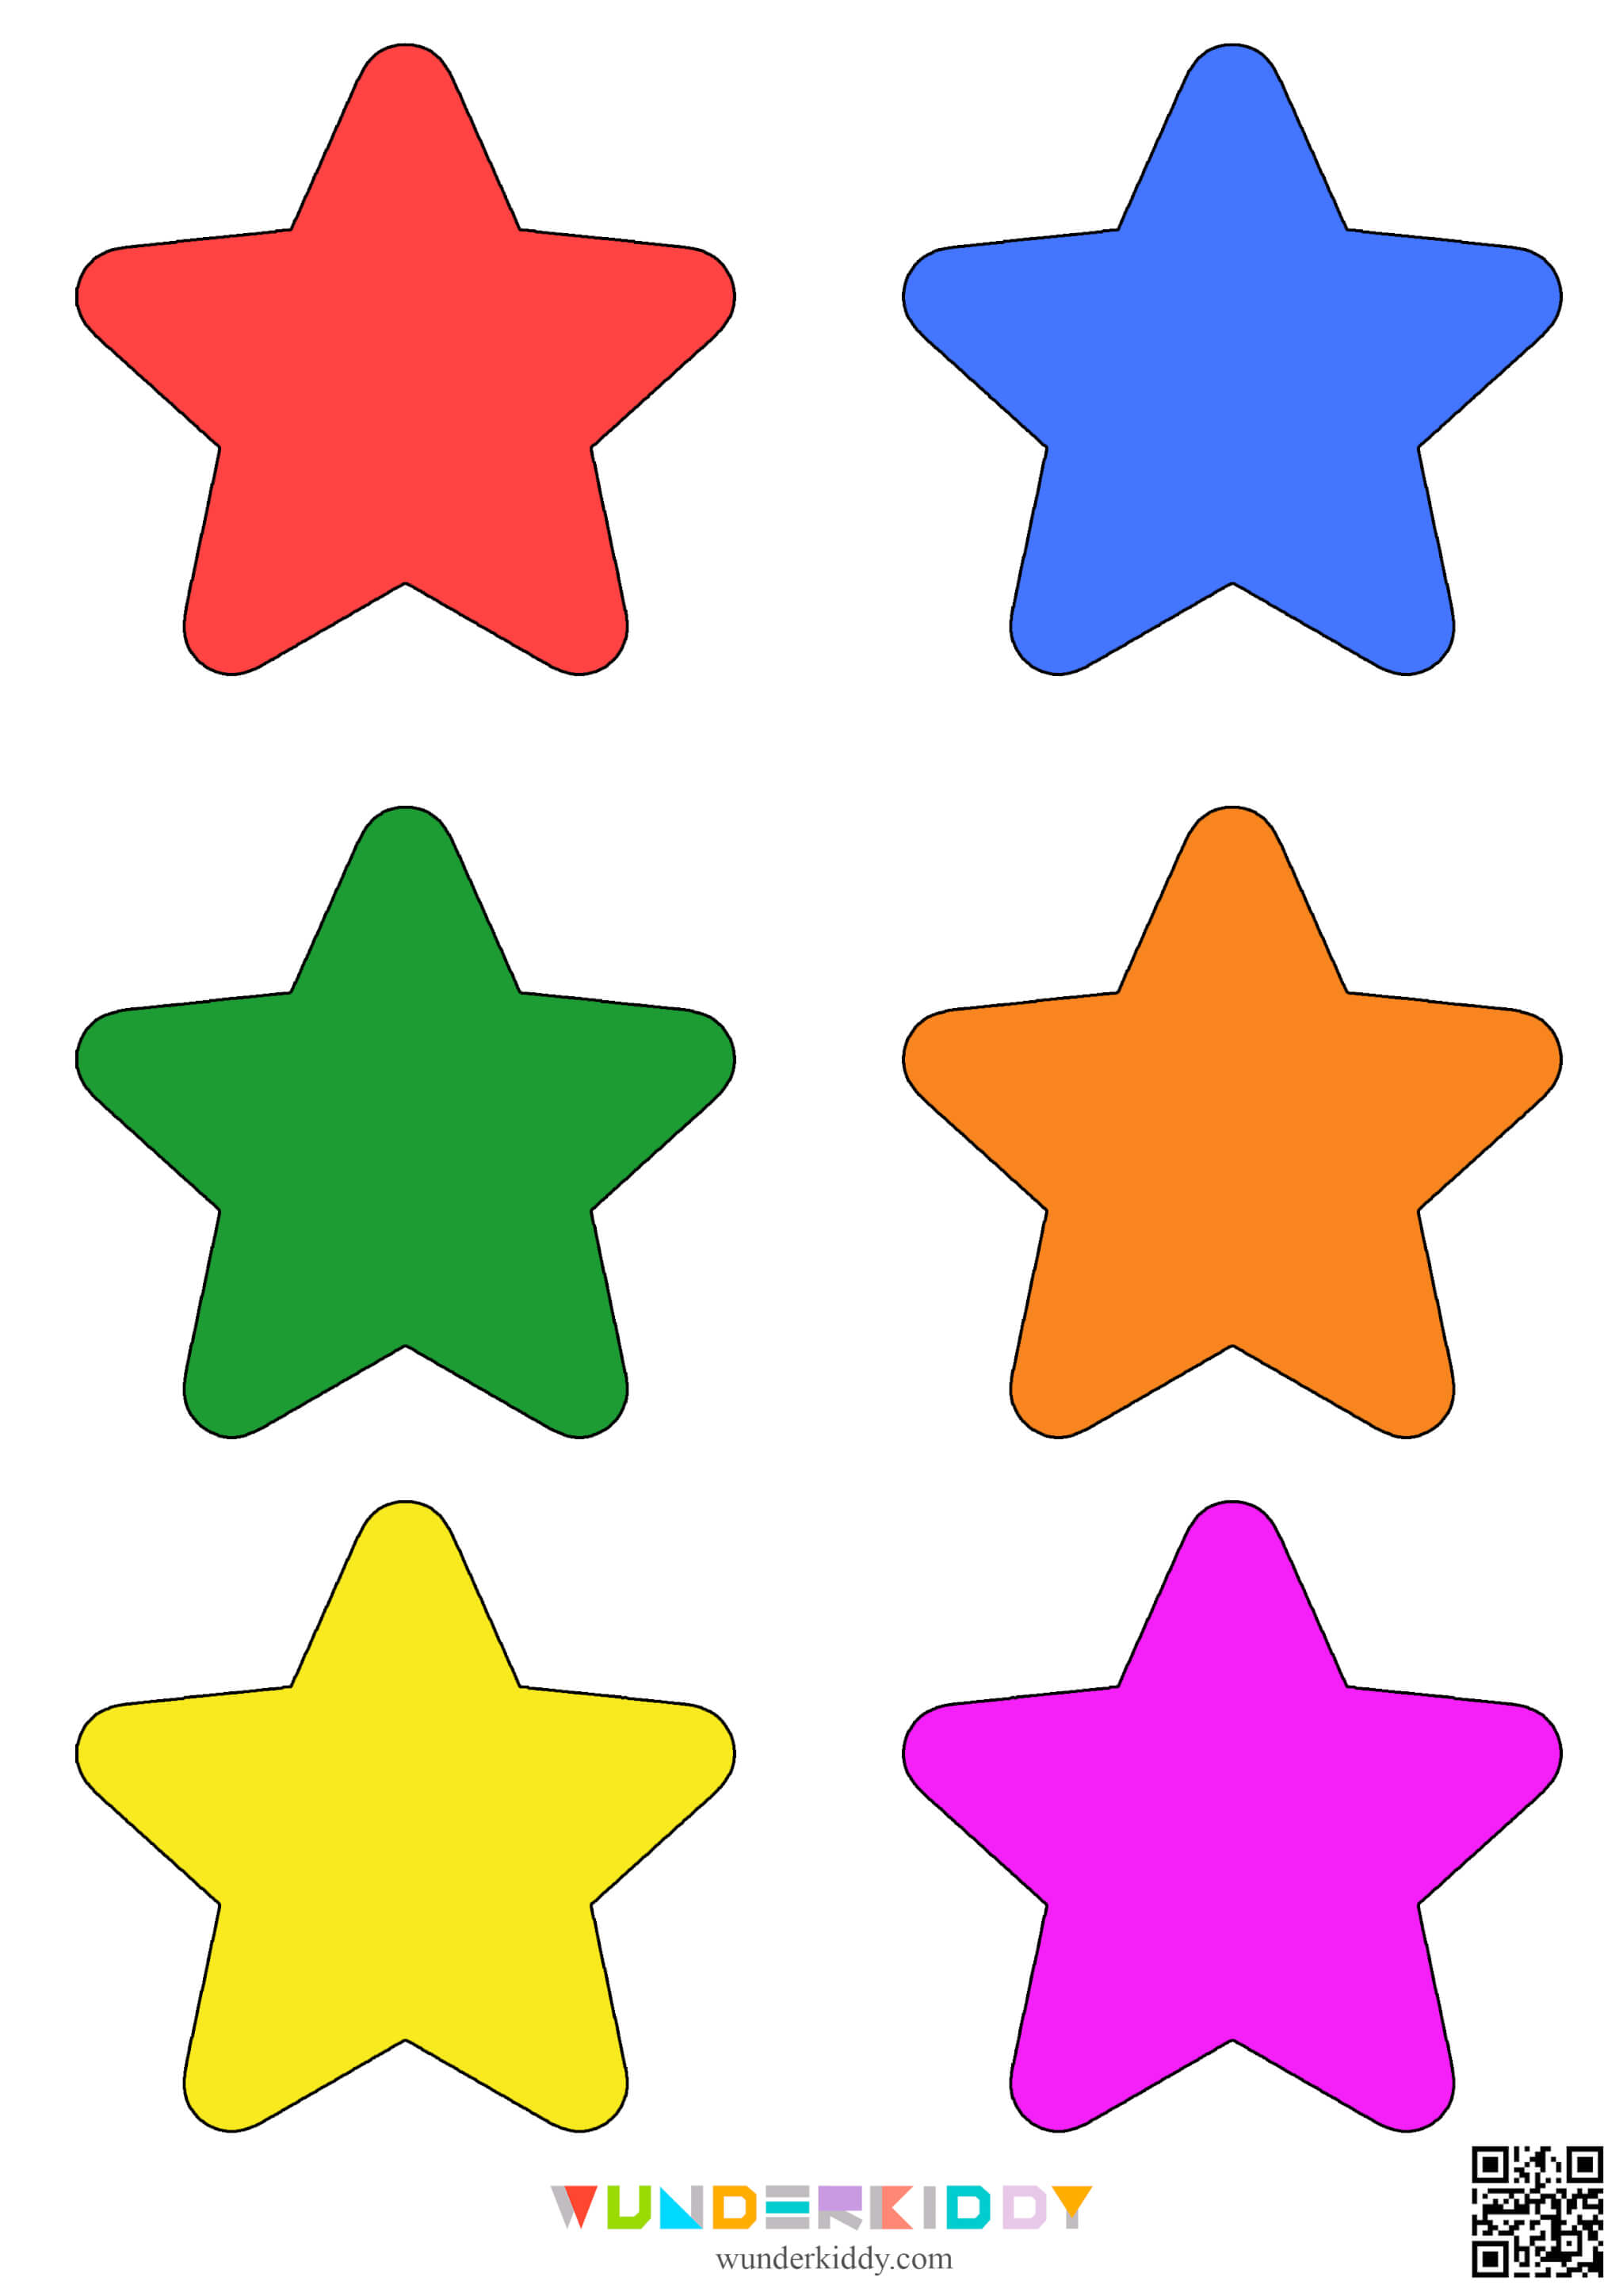 Printable Star Template - Image 2